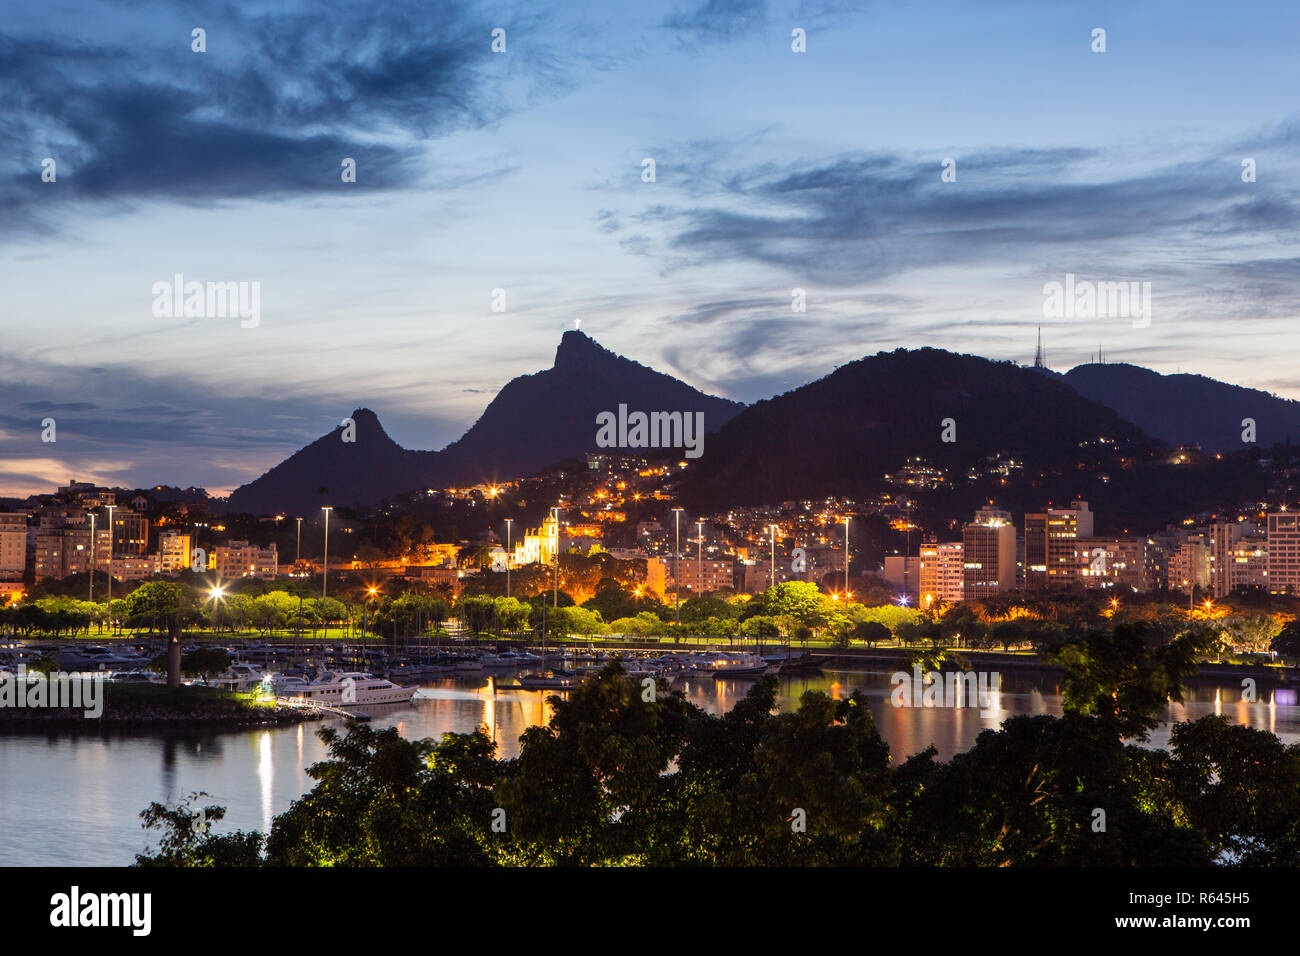 Belle vue panoramique sur la ville de Rio de Janeiro, corcovado avec au crépuscule. Banque D'Images